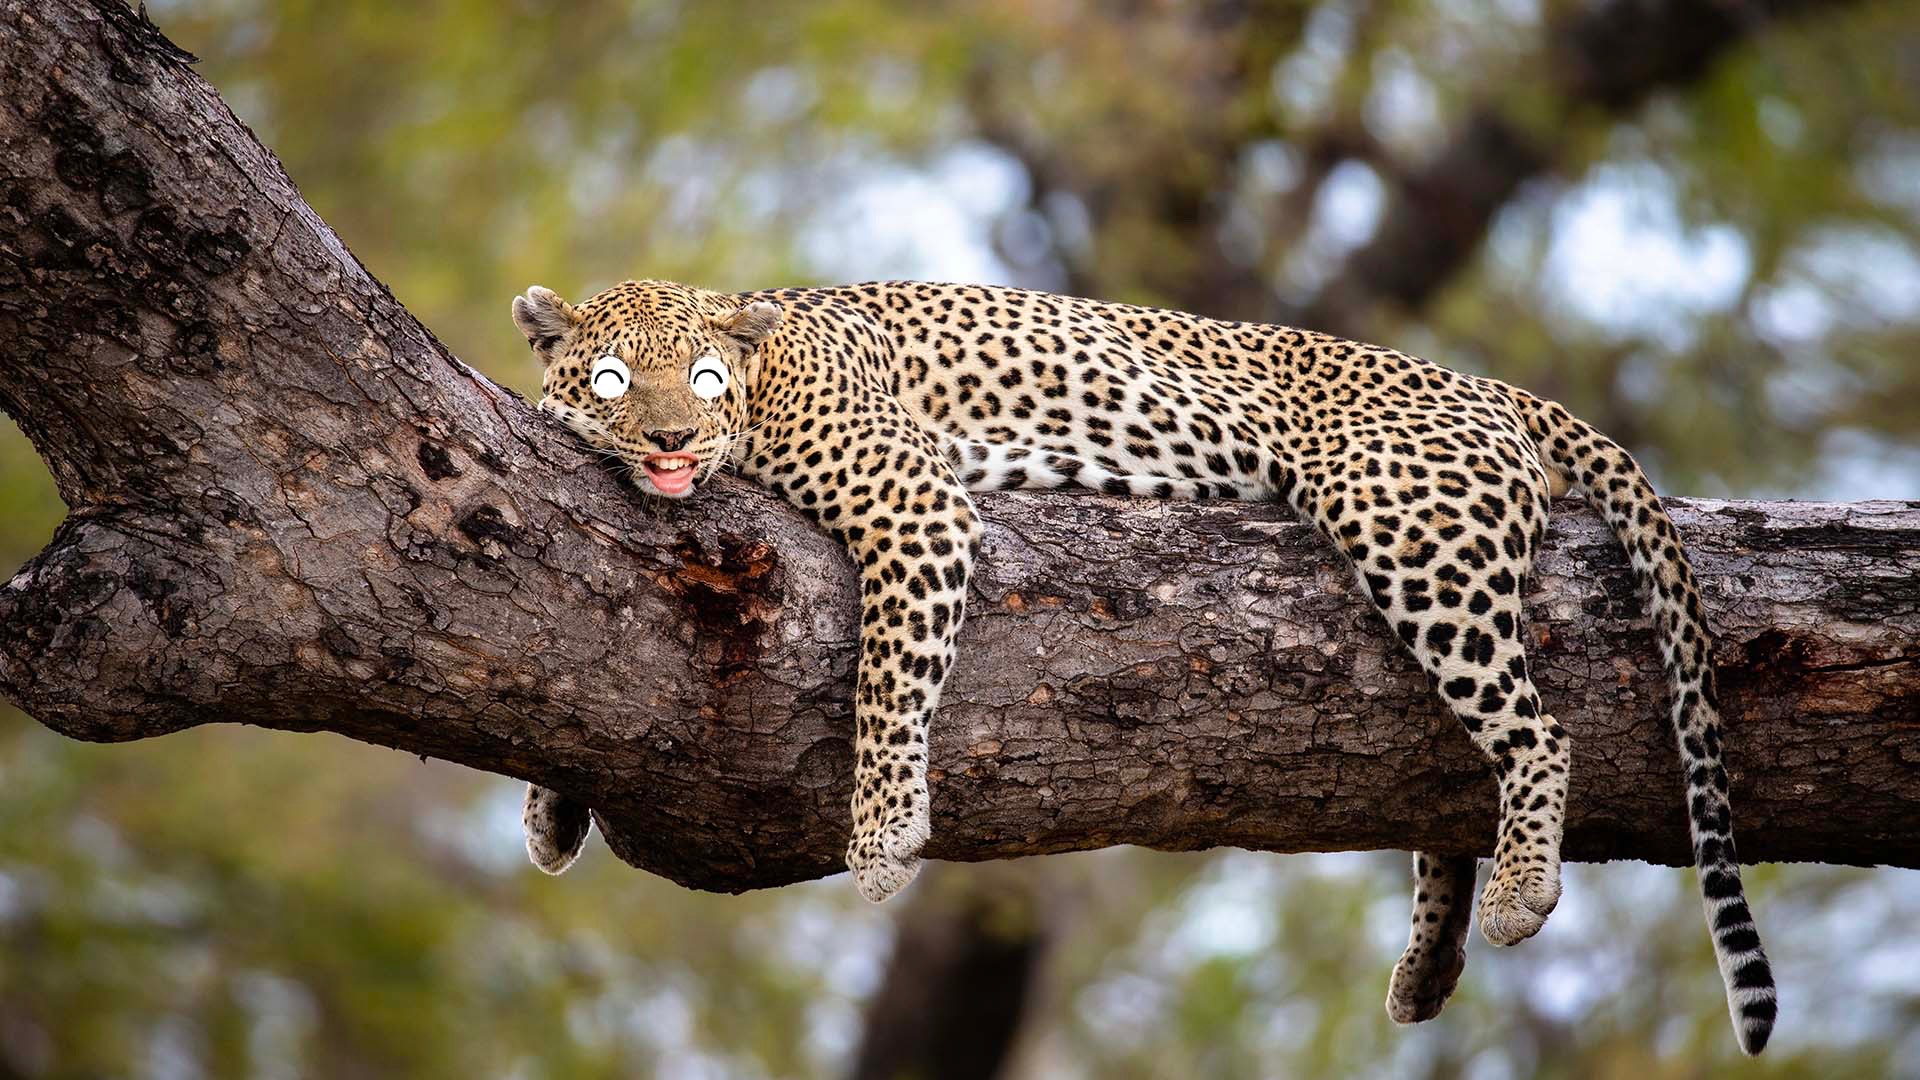 A sleeping cheetah